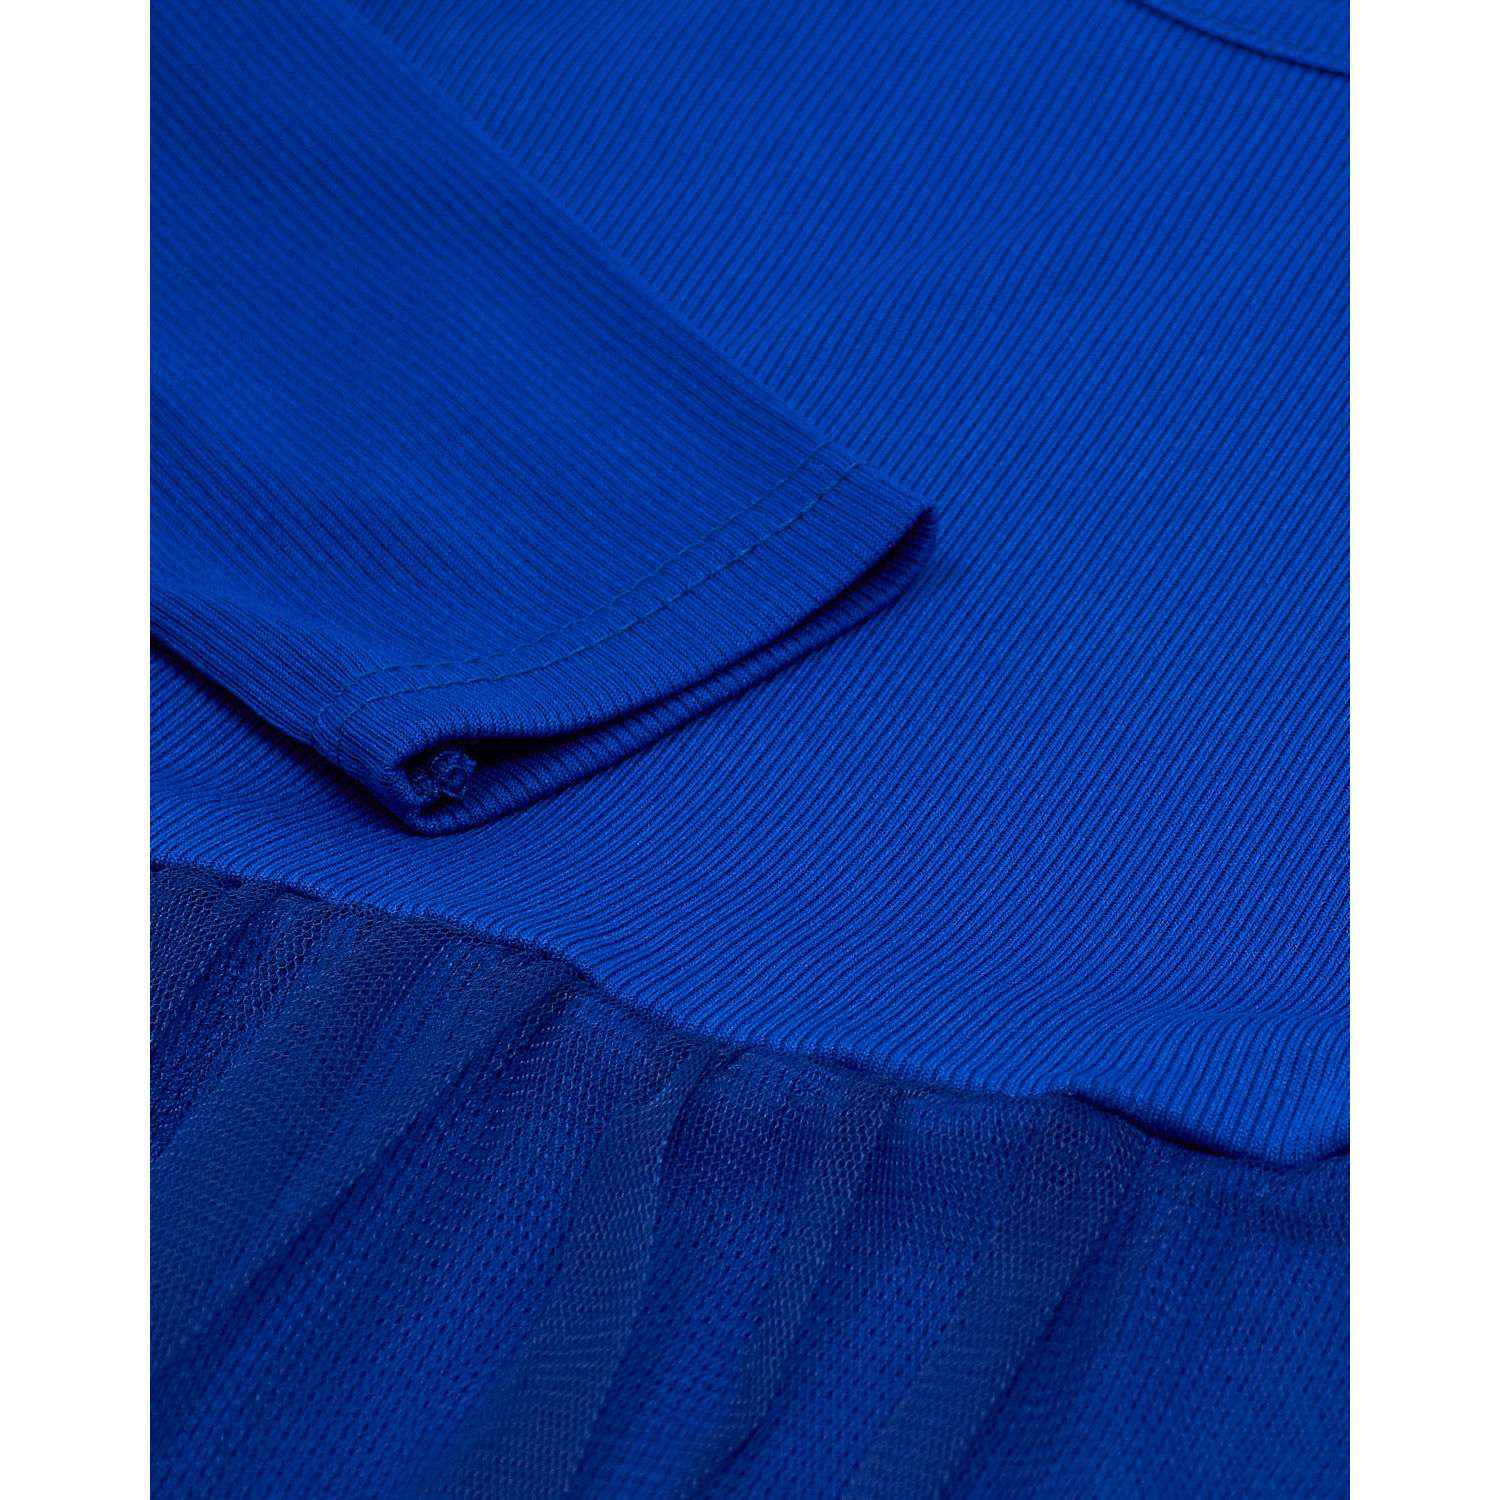 Платье Katlen БР-Пл-007/Синий - фото 3